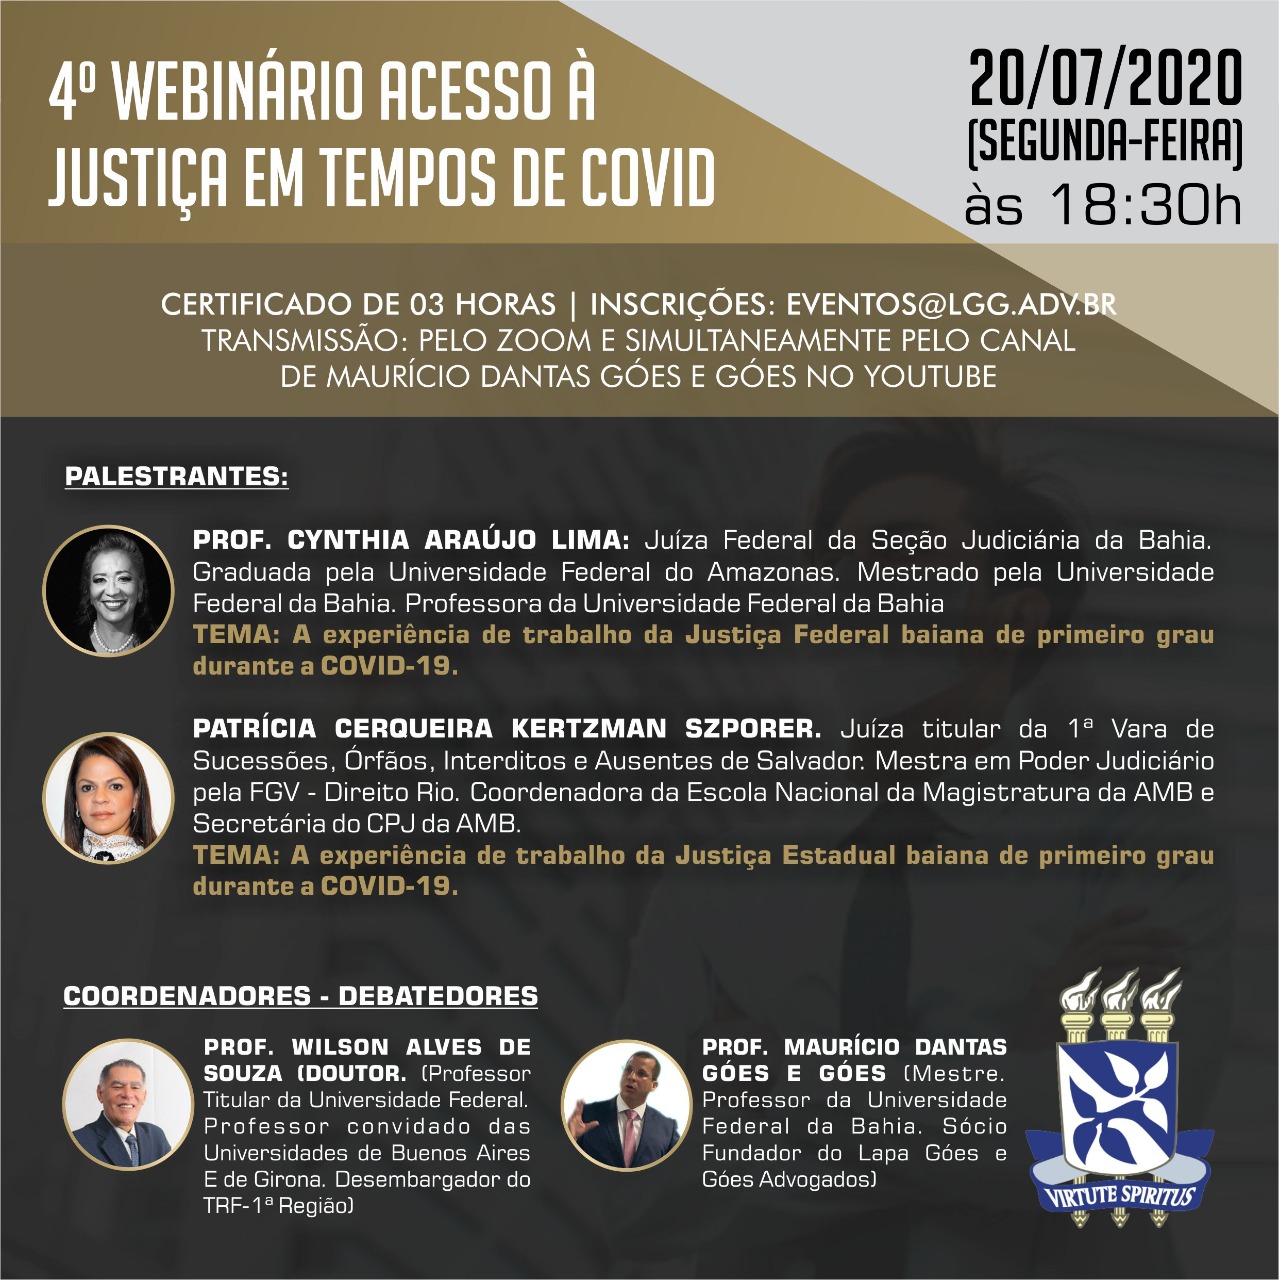 INSTITUCIONAL: Veja como participar do 4º Webinário Acesso à Justiça em Tempos da Covid-19